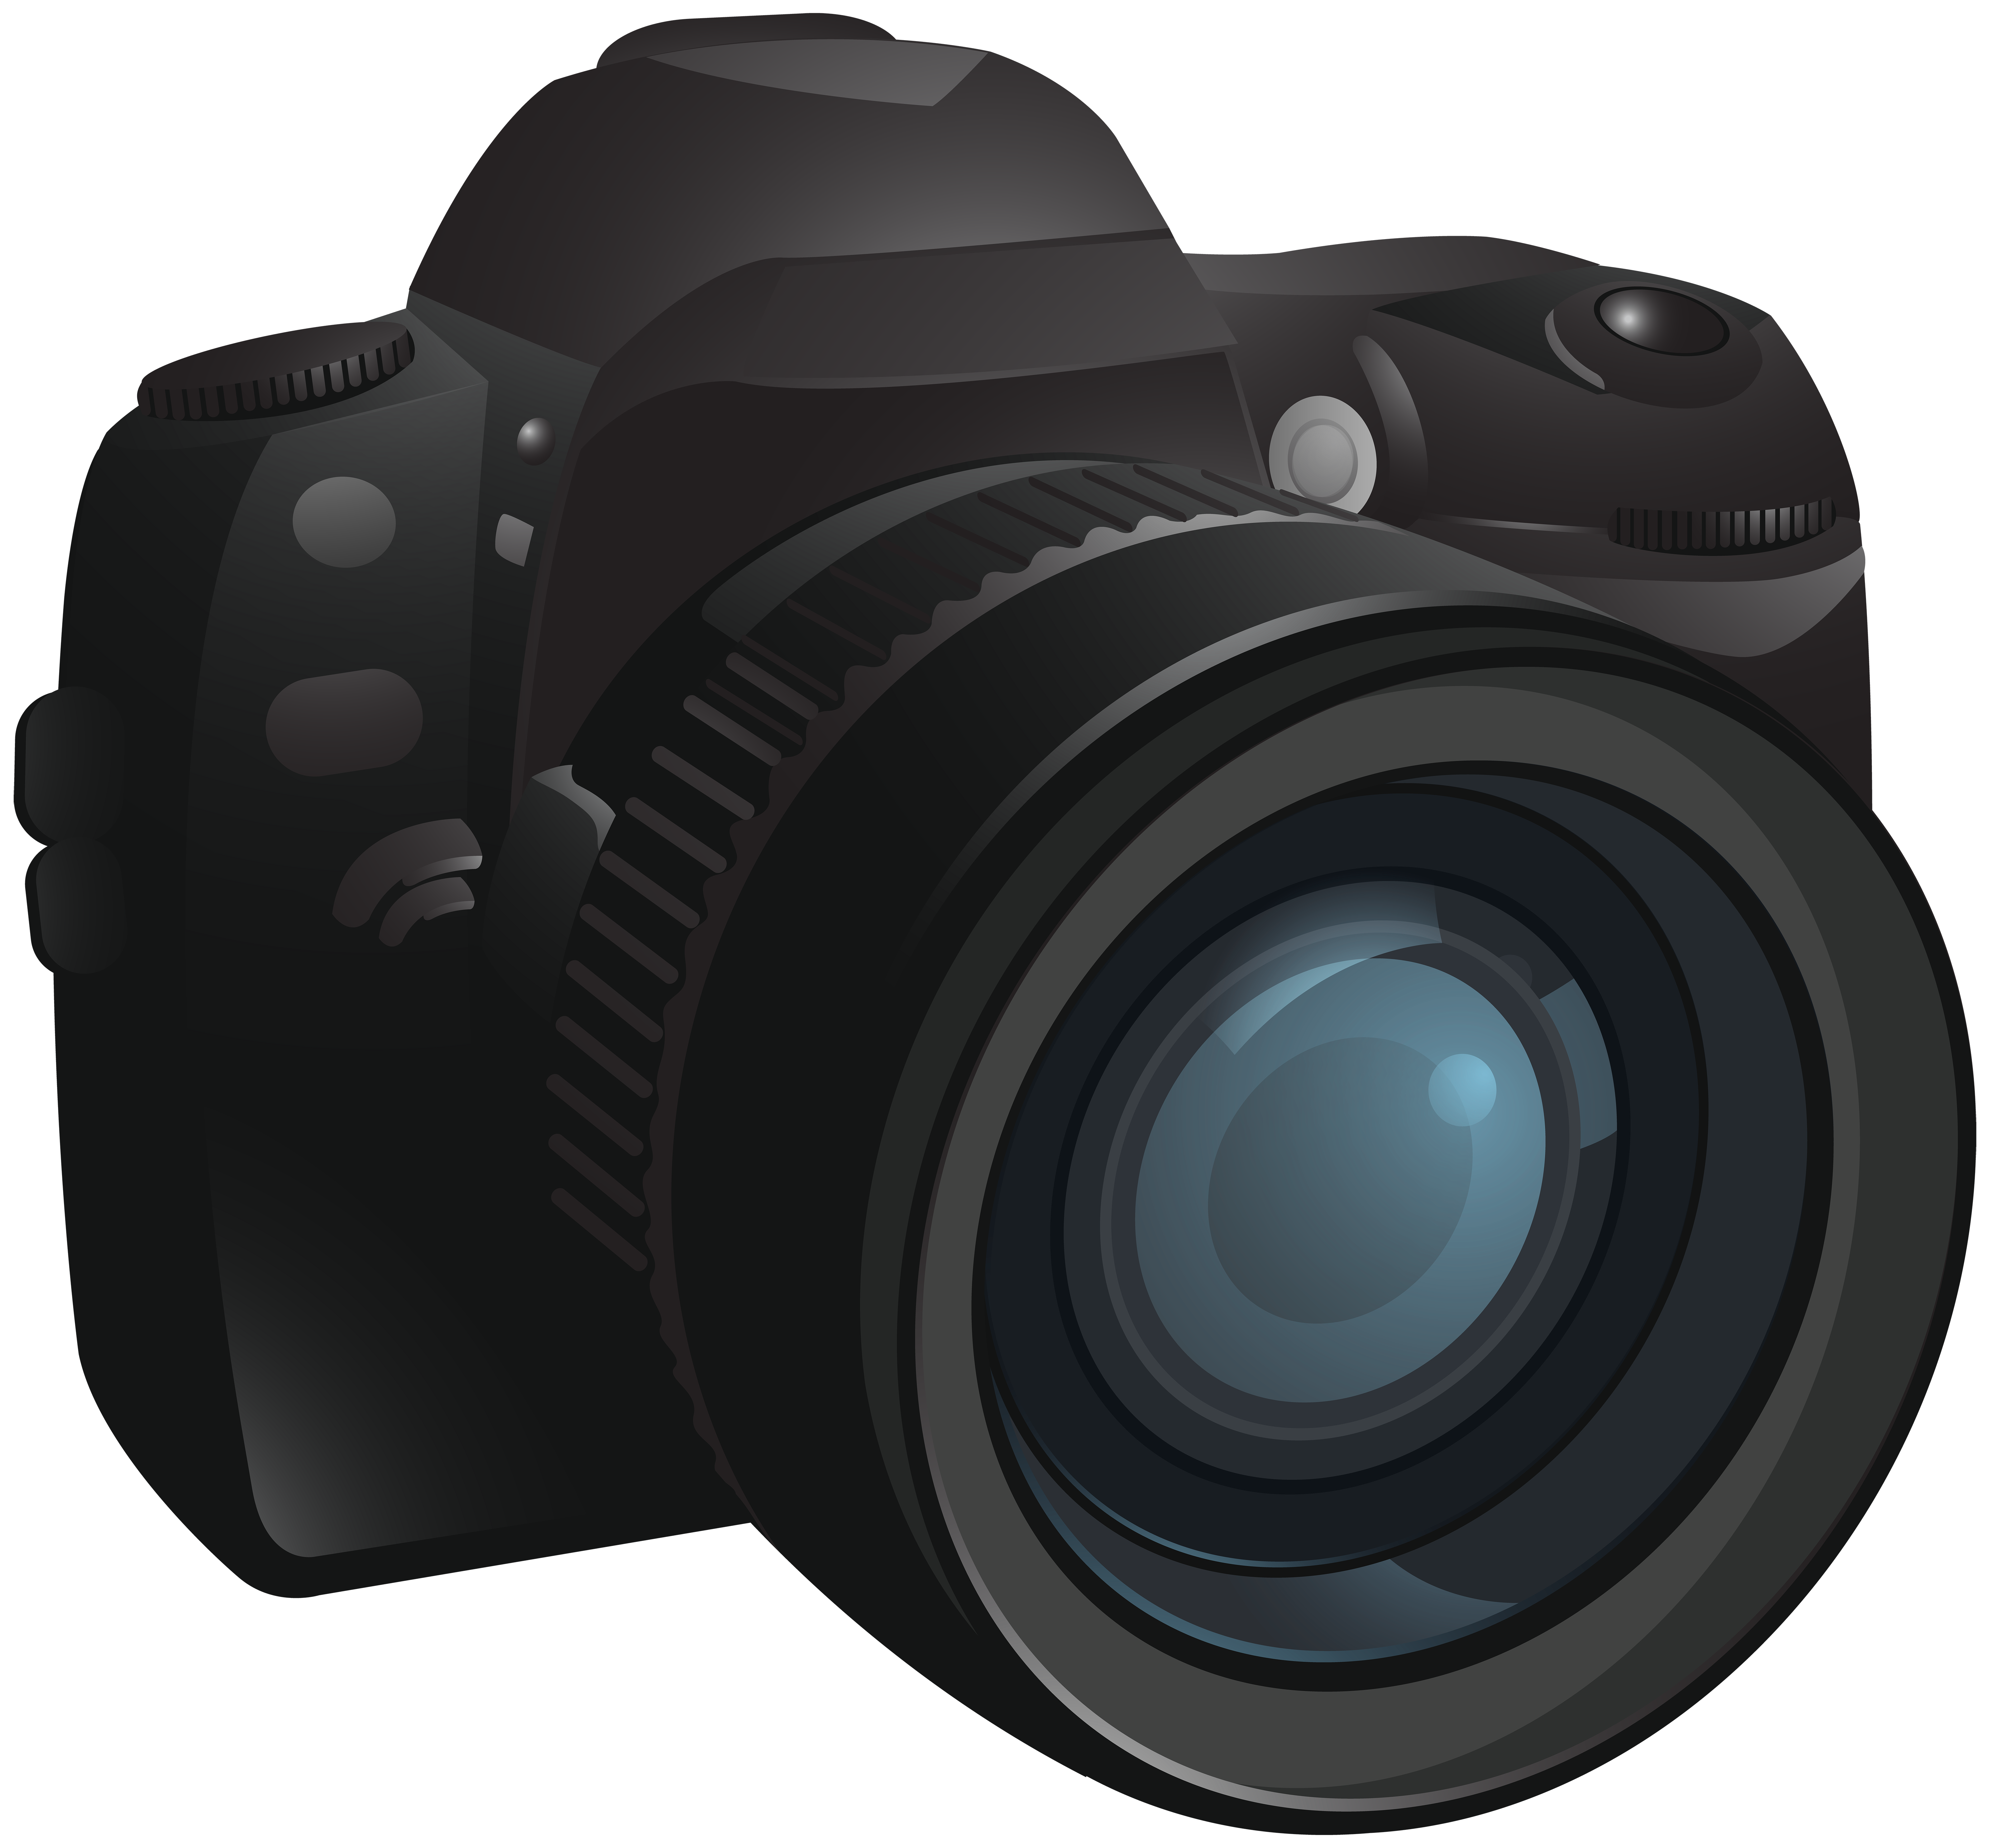 Digital SLR Camera - Camera Transparent PNG Image png download - 6000*